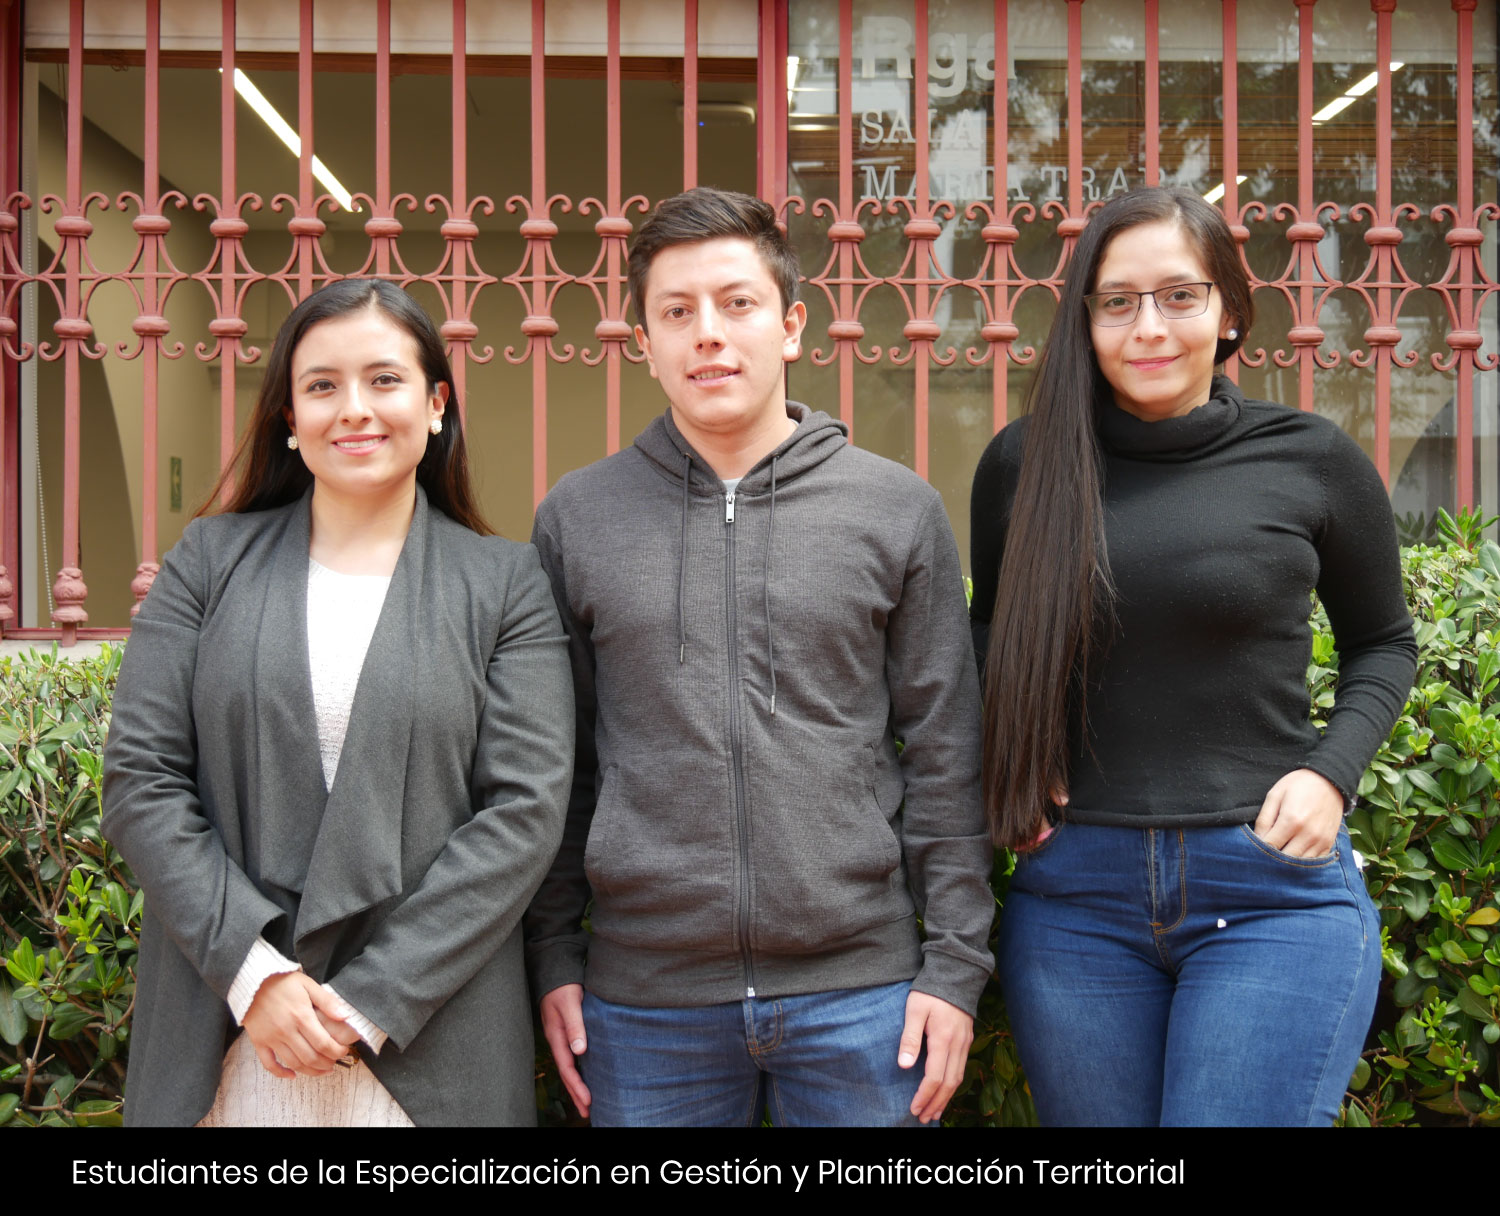 Estudiantes de la Especialización en Gestión y Planificación Territorial Cider | Uniandes